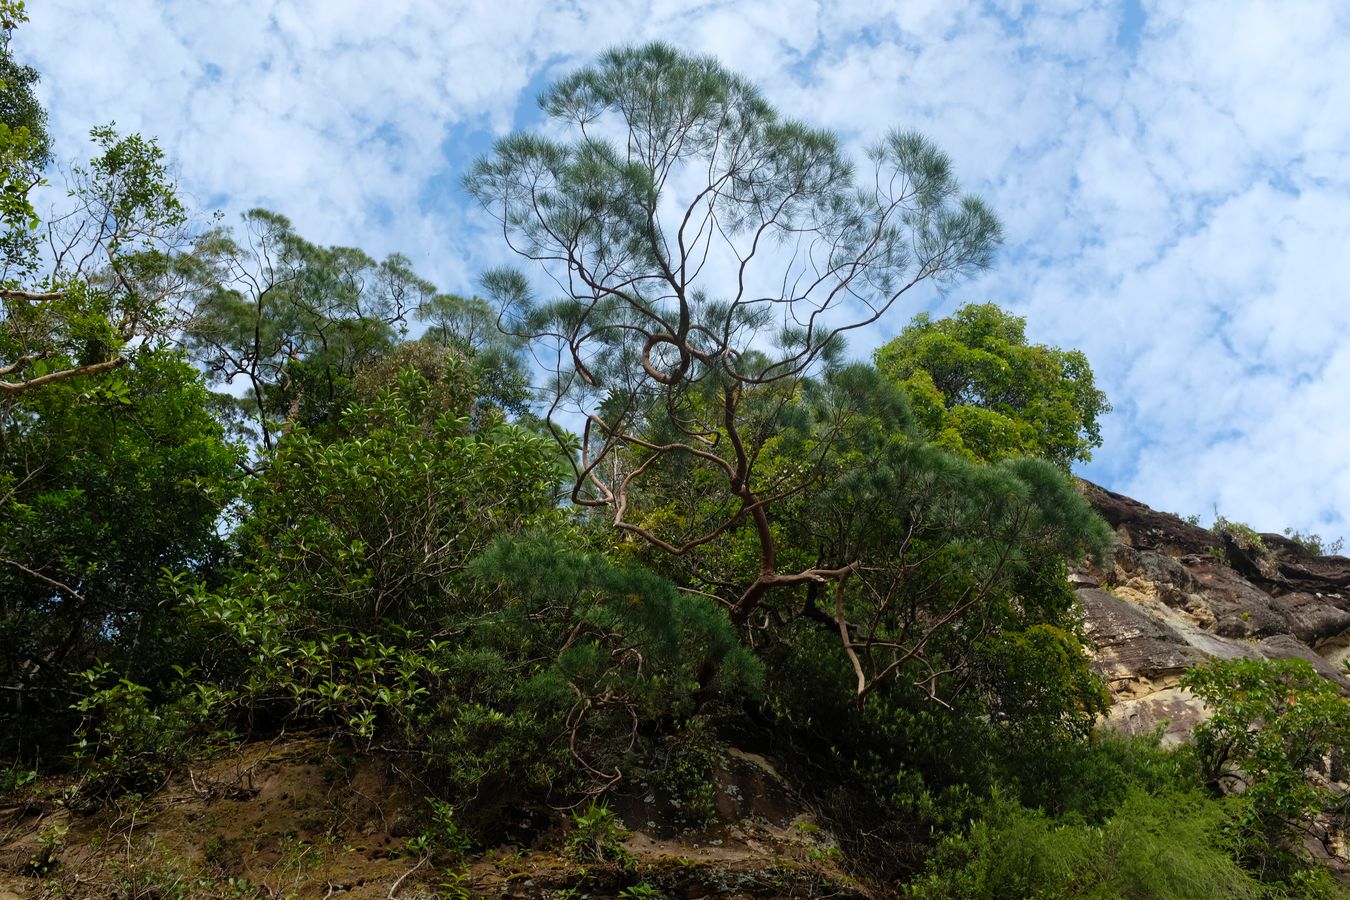 Cliff Vegetation and Landscape